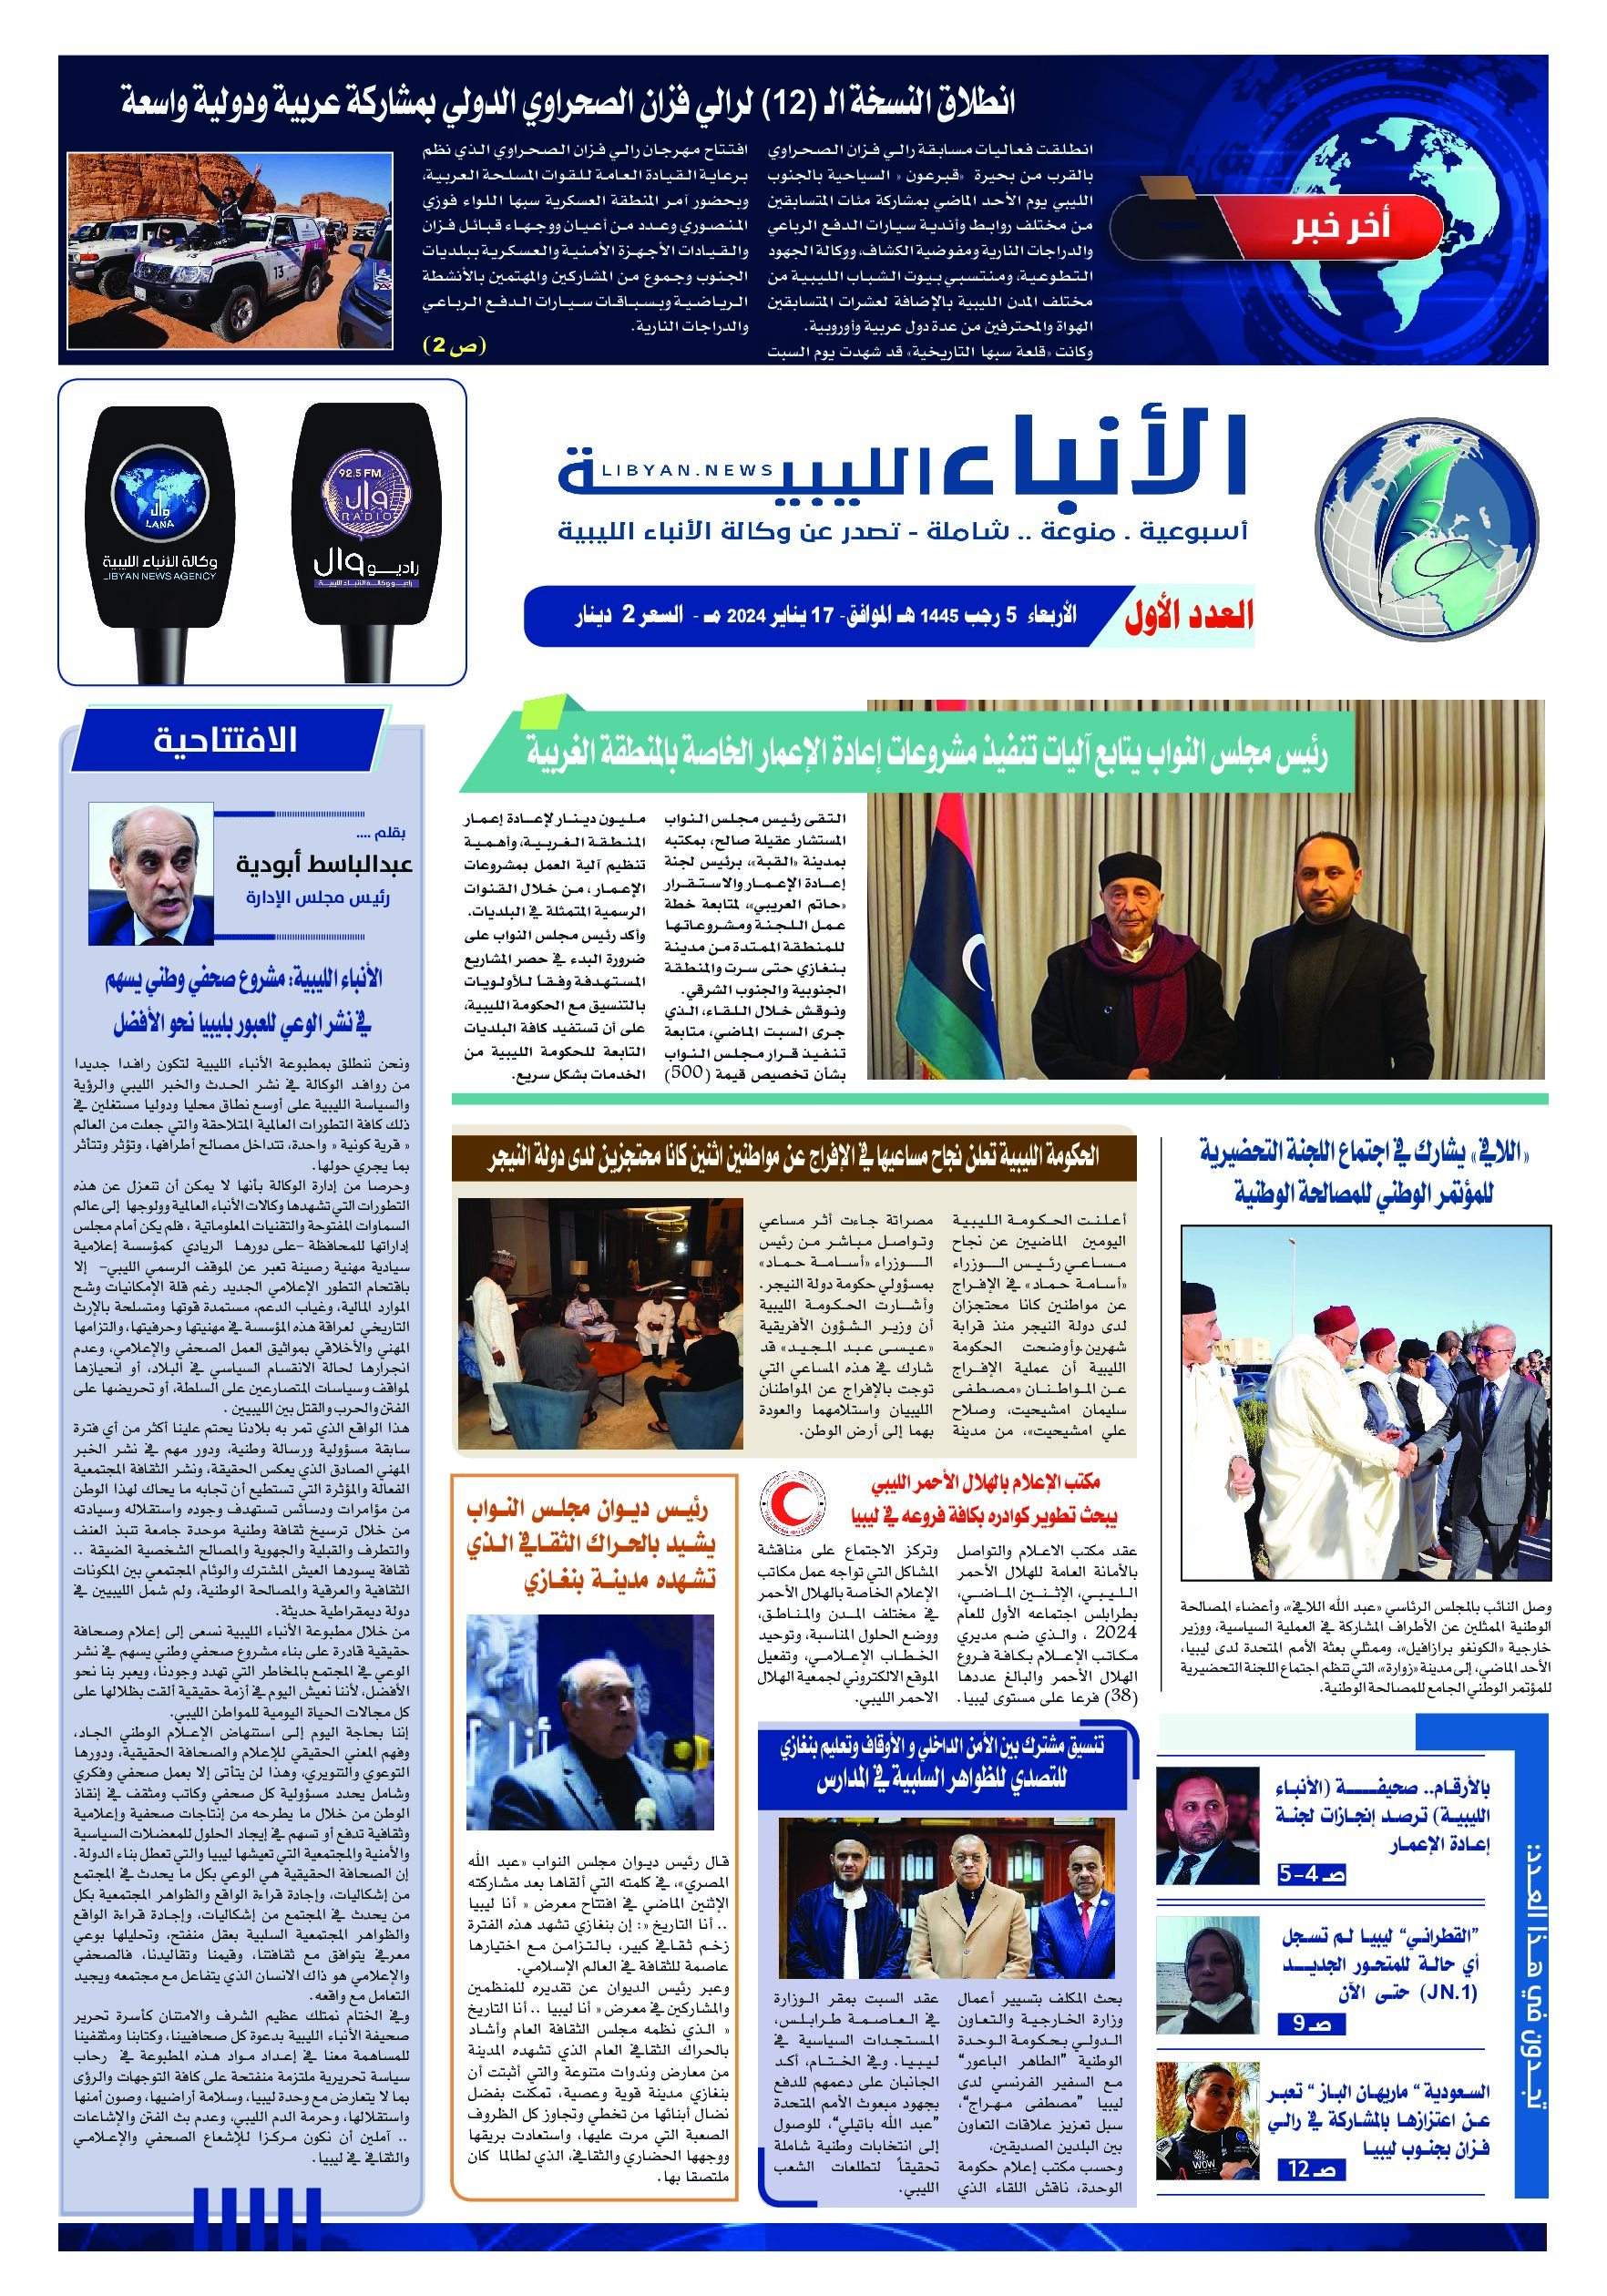 صحيفة الأنباء الليبية (العدد الأول)